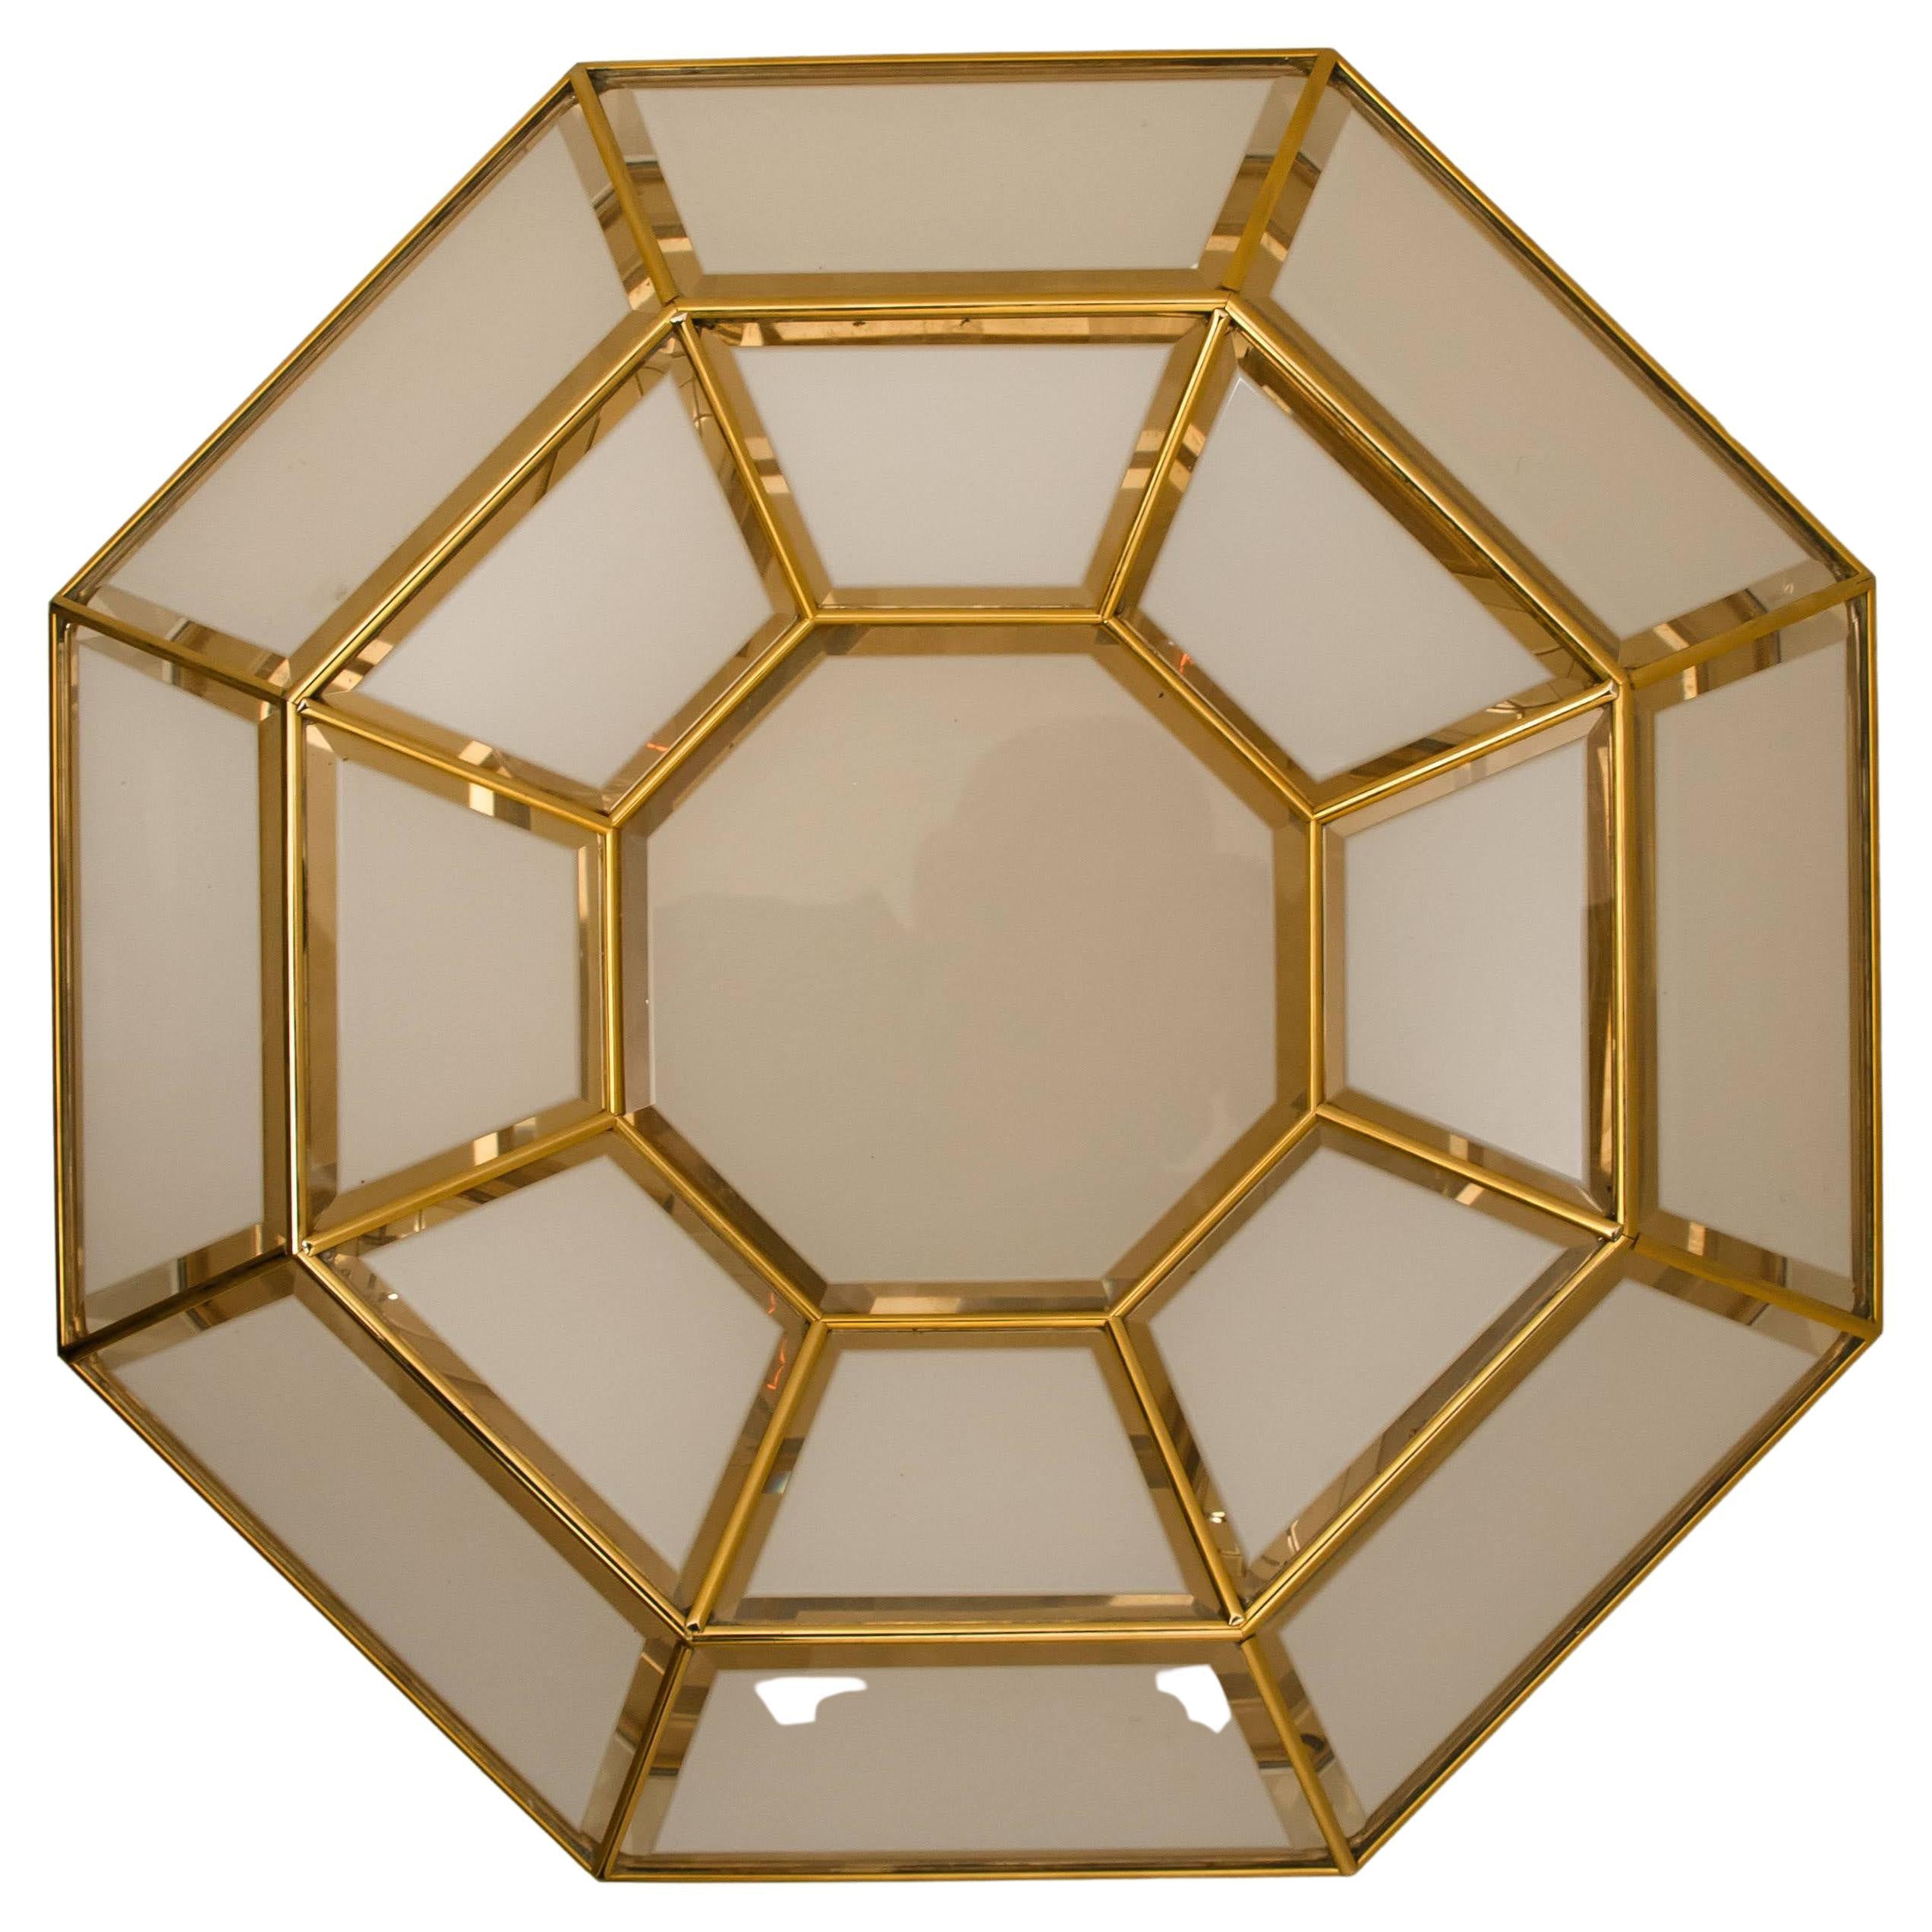 Octagonal Brass Glass Flush Mounts or Wall Lights 1970